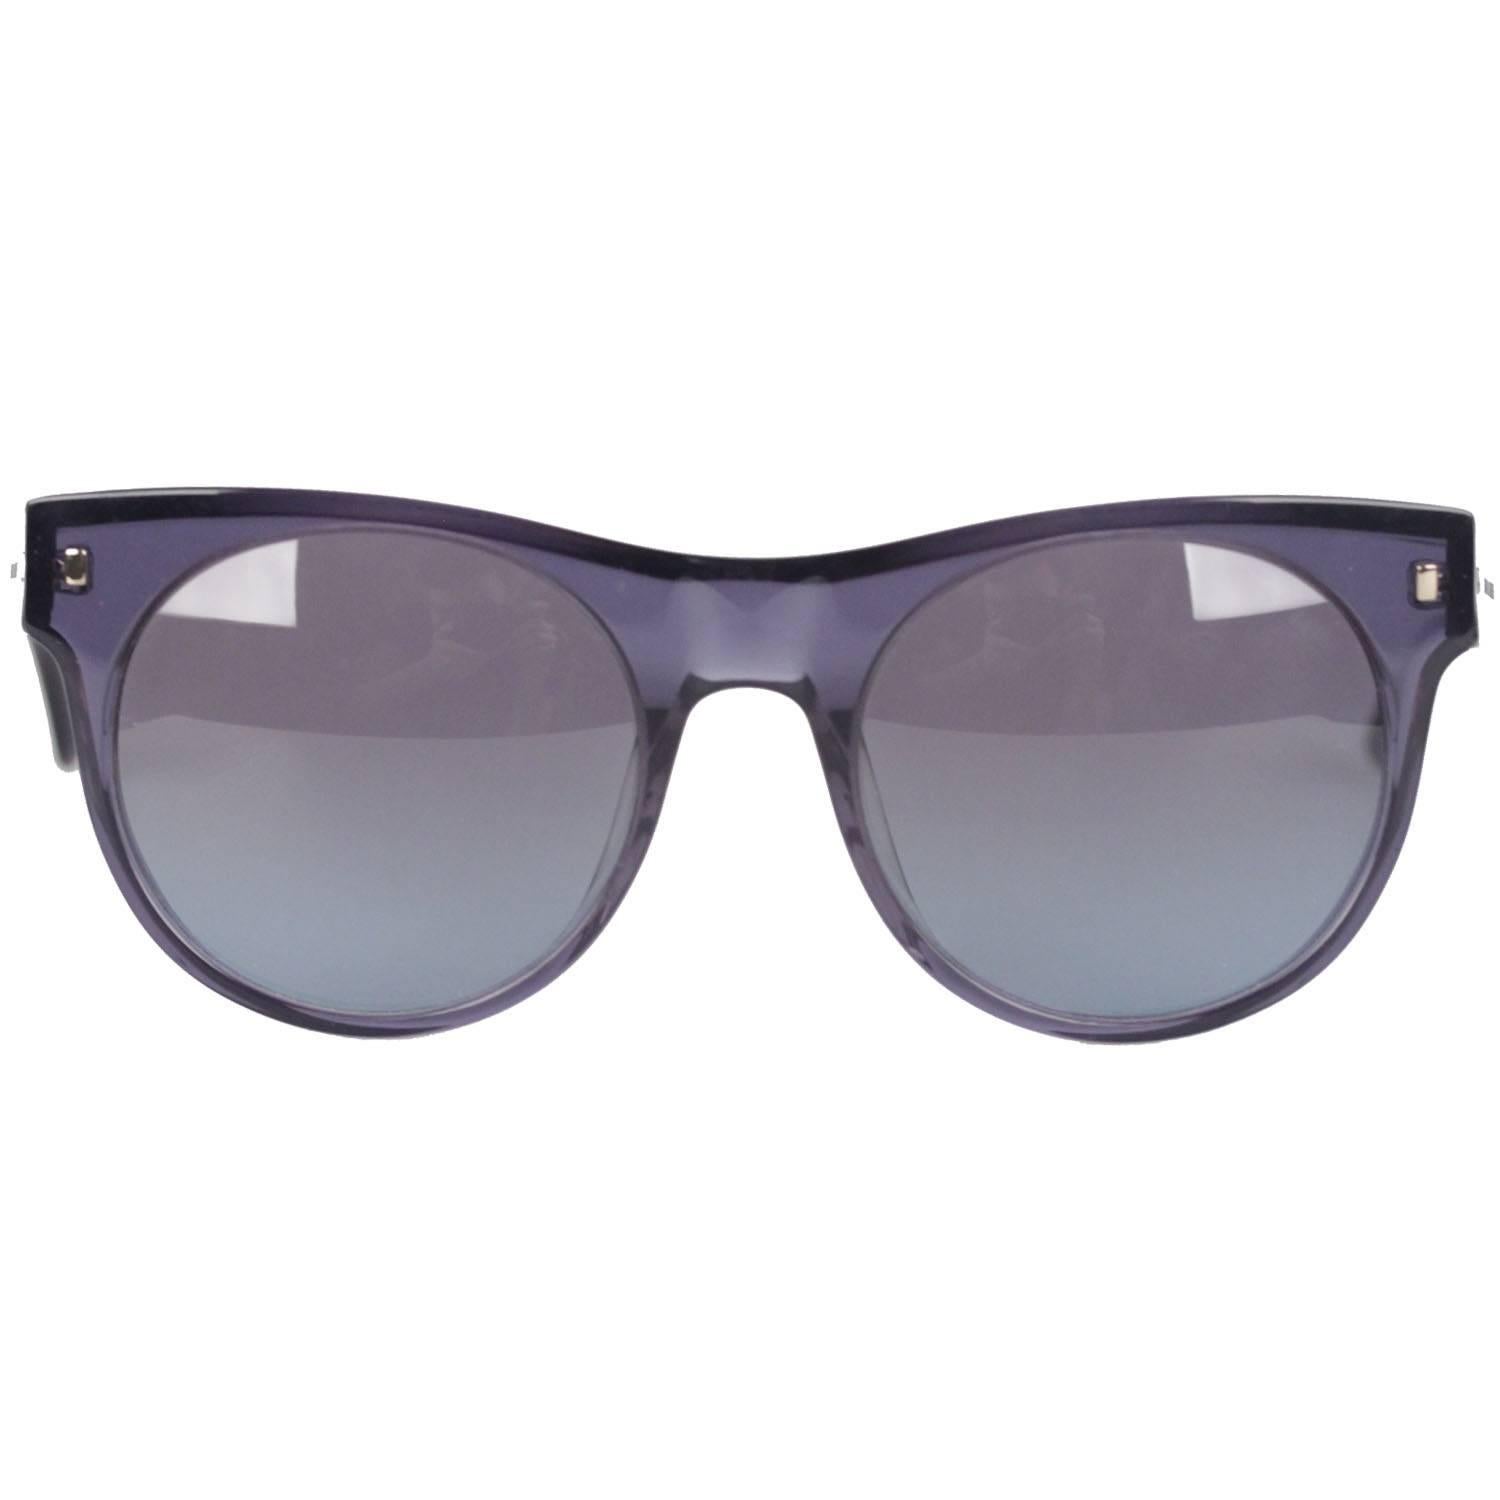 Saint Laurent Paris Blue Round Mint Sunglasses YSL 6360-N-S 53mm NOS